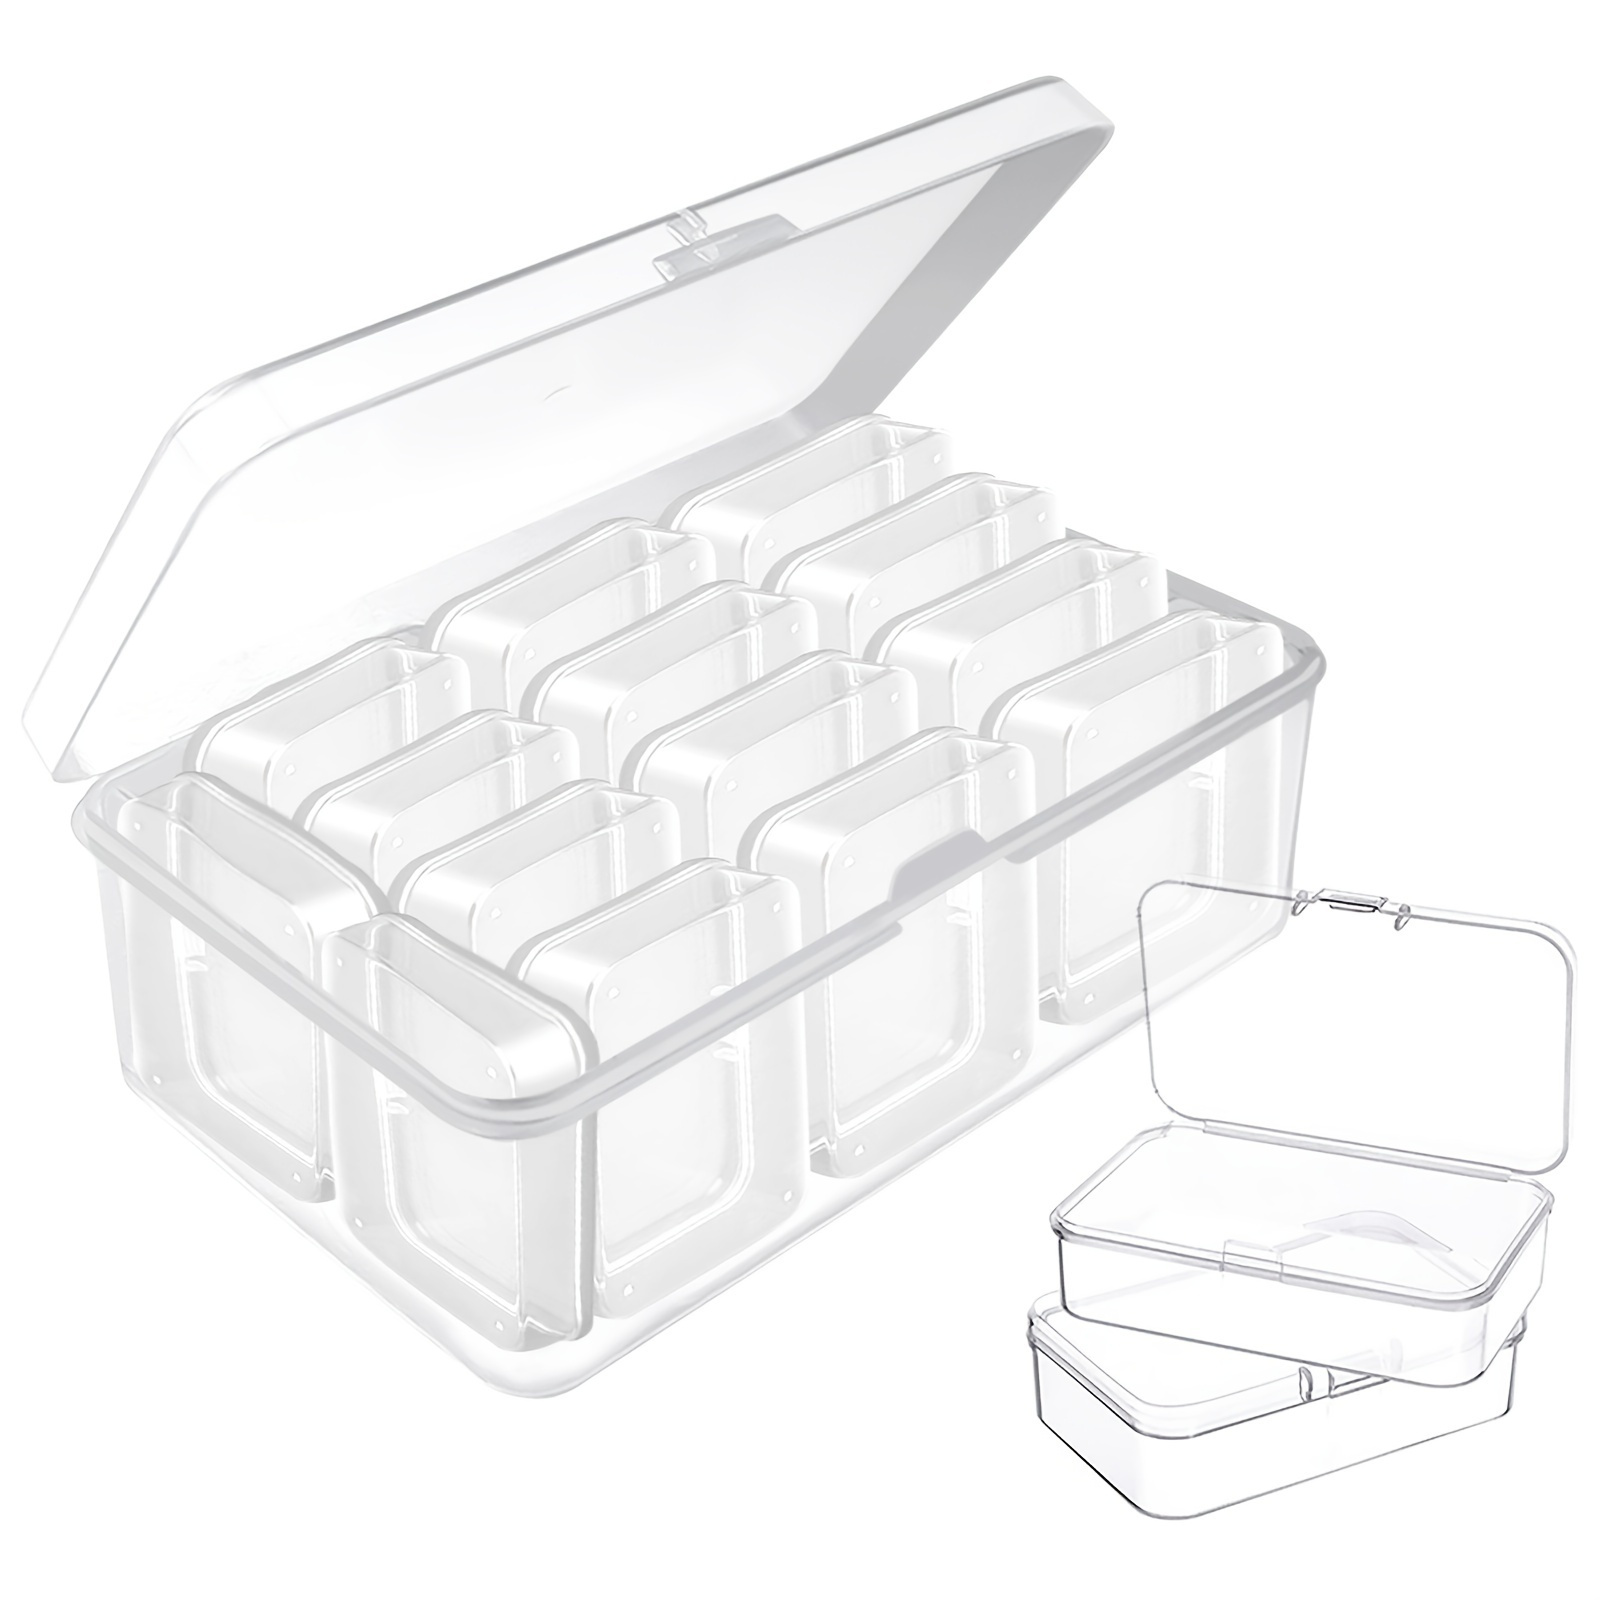 testyu Caja pequeña de plástico, 4.3 x 2.3 x 1.5 pulgadas, apilable,  minicaja de almacenamiento con tapa, contenedor organizador transparente  para